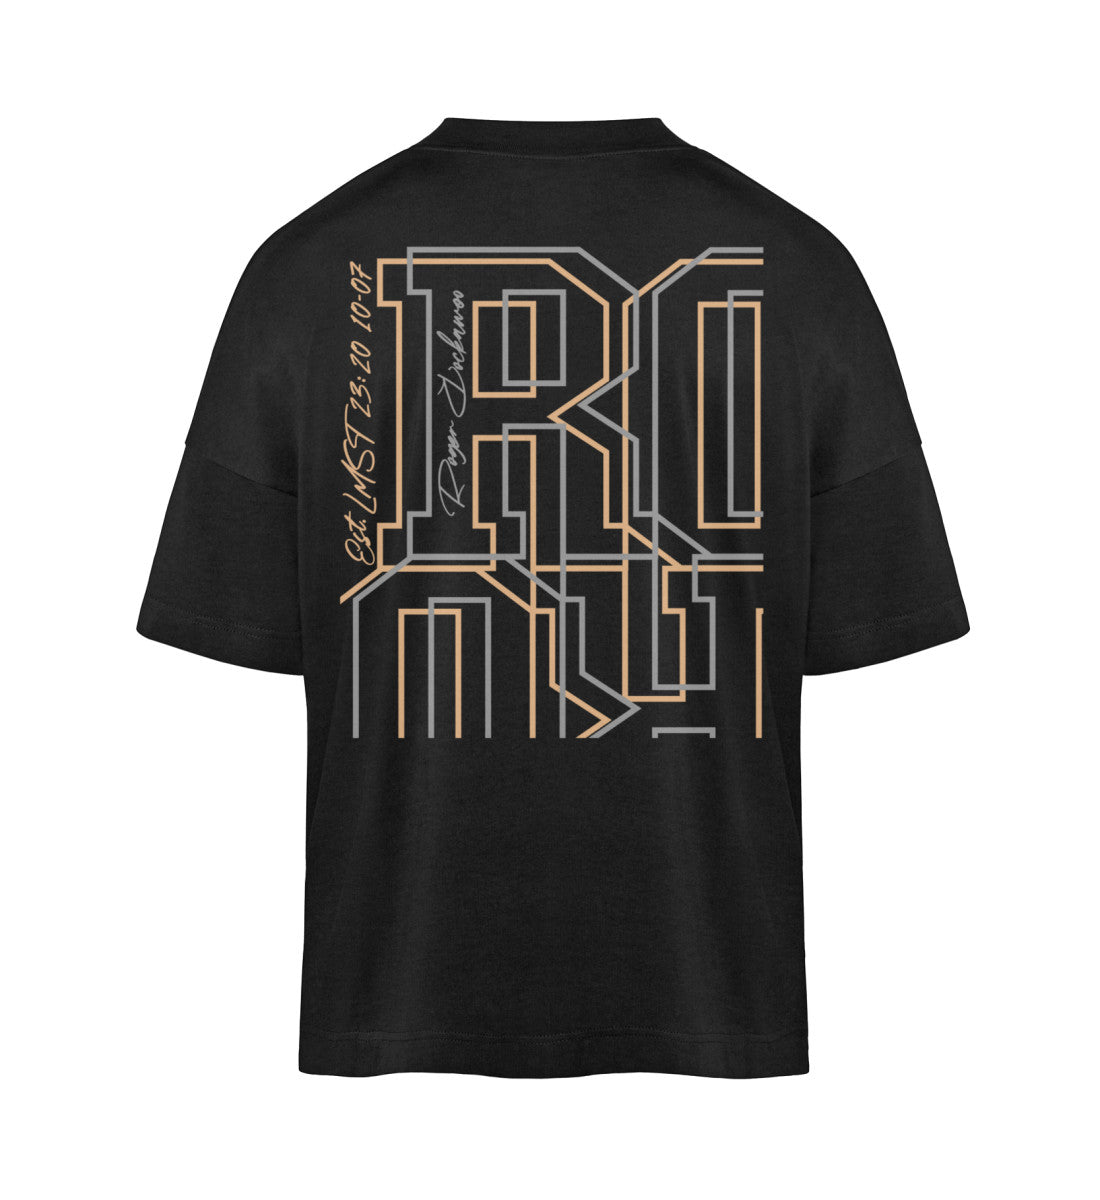 Schwarzes T-Shirt Unisex Oversize Fit für Frauen und Männer bedruckt mit dem Design der Roger Rockawoo Kollektion Mountainbike Downhill is no sabotage